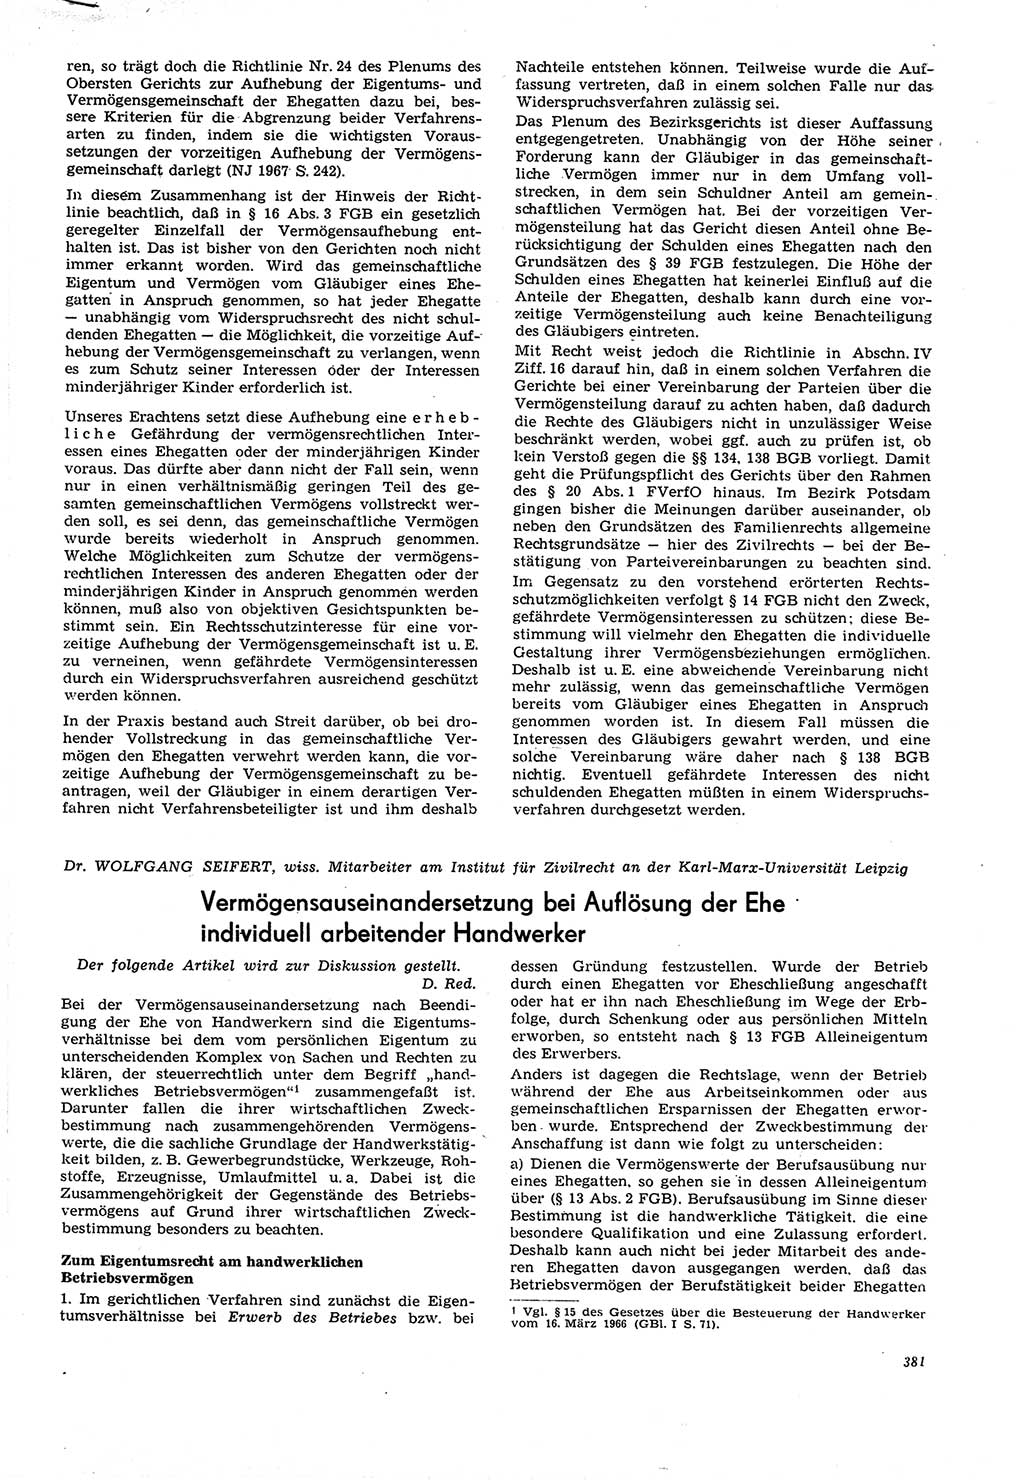 Neue Justiz (NJ), Zeitschrift für Recht und Rechtswissenschaft [Deutsche Demokratische Republik (DDR)], 21. Jahrgang 1967, Seite 381 (NJ DDR 1967, S. 381)